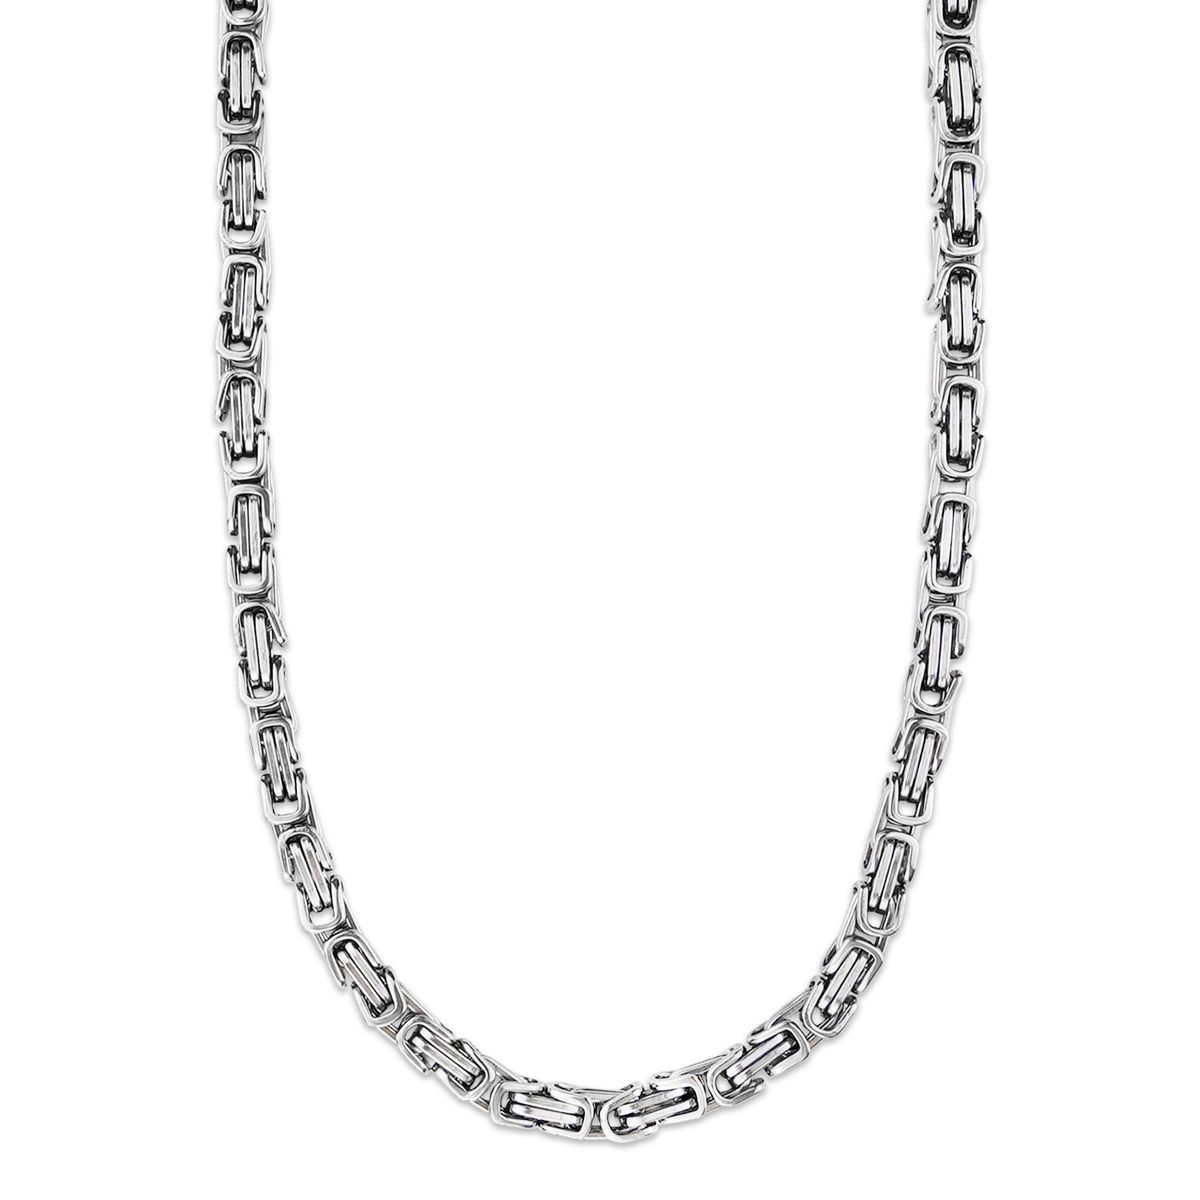 Halskette, Männer Edelstahl mm cm Herrenkette Kette Silber | Armband Ketten 5 Königskette König Design 45